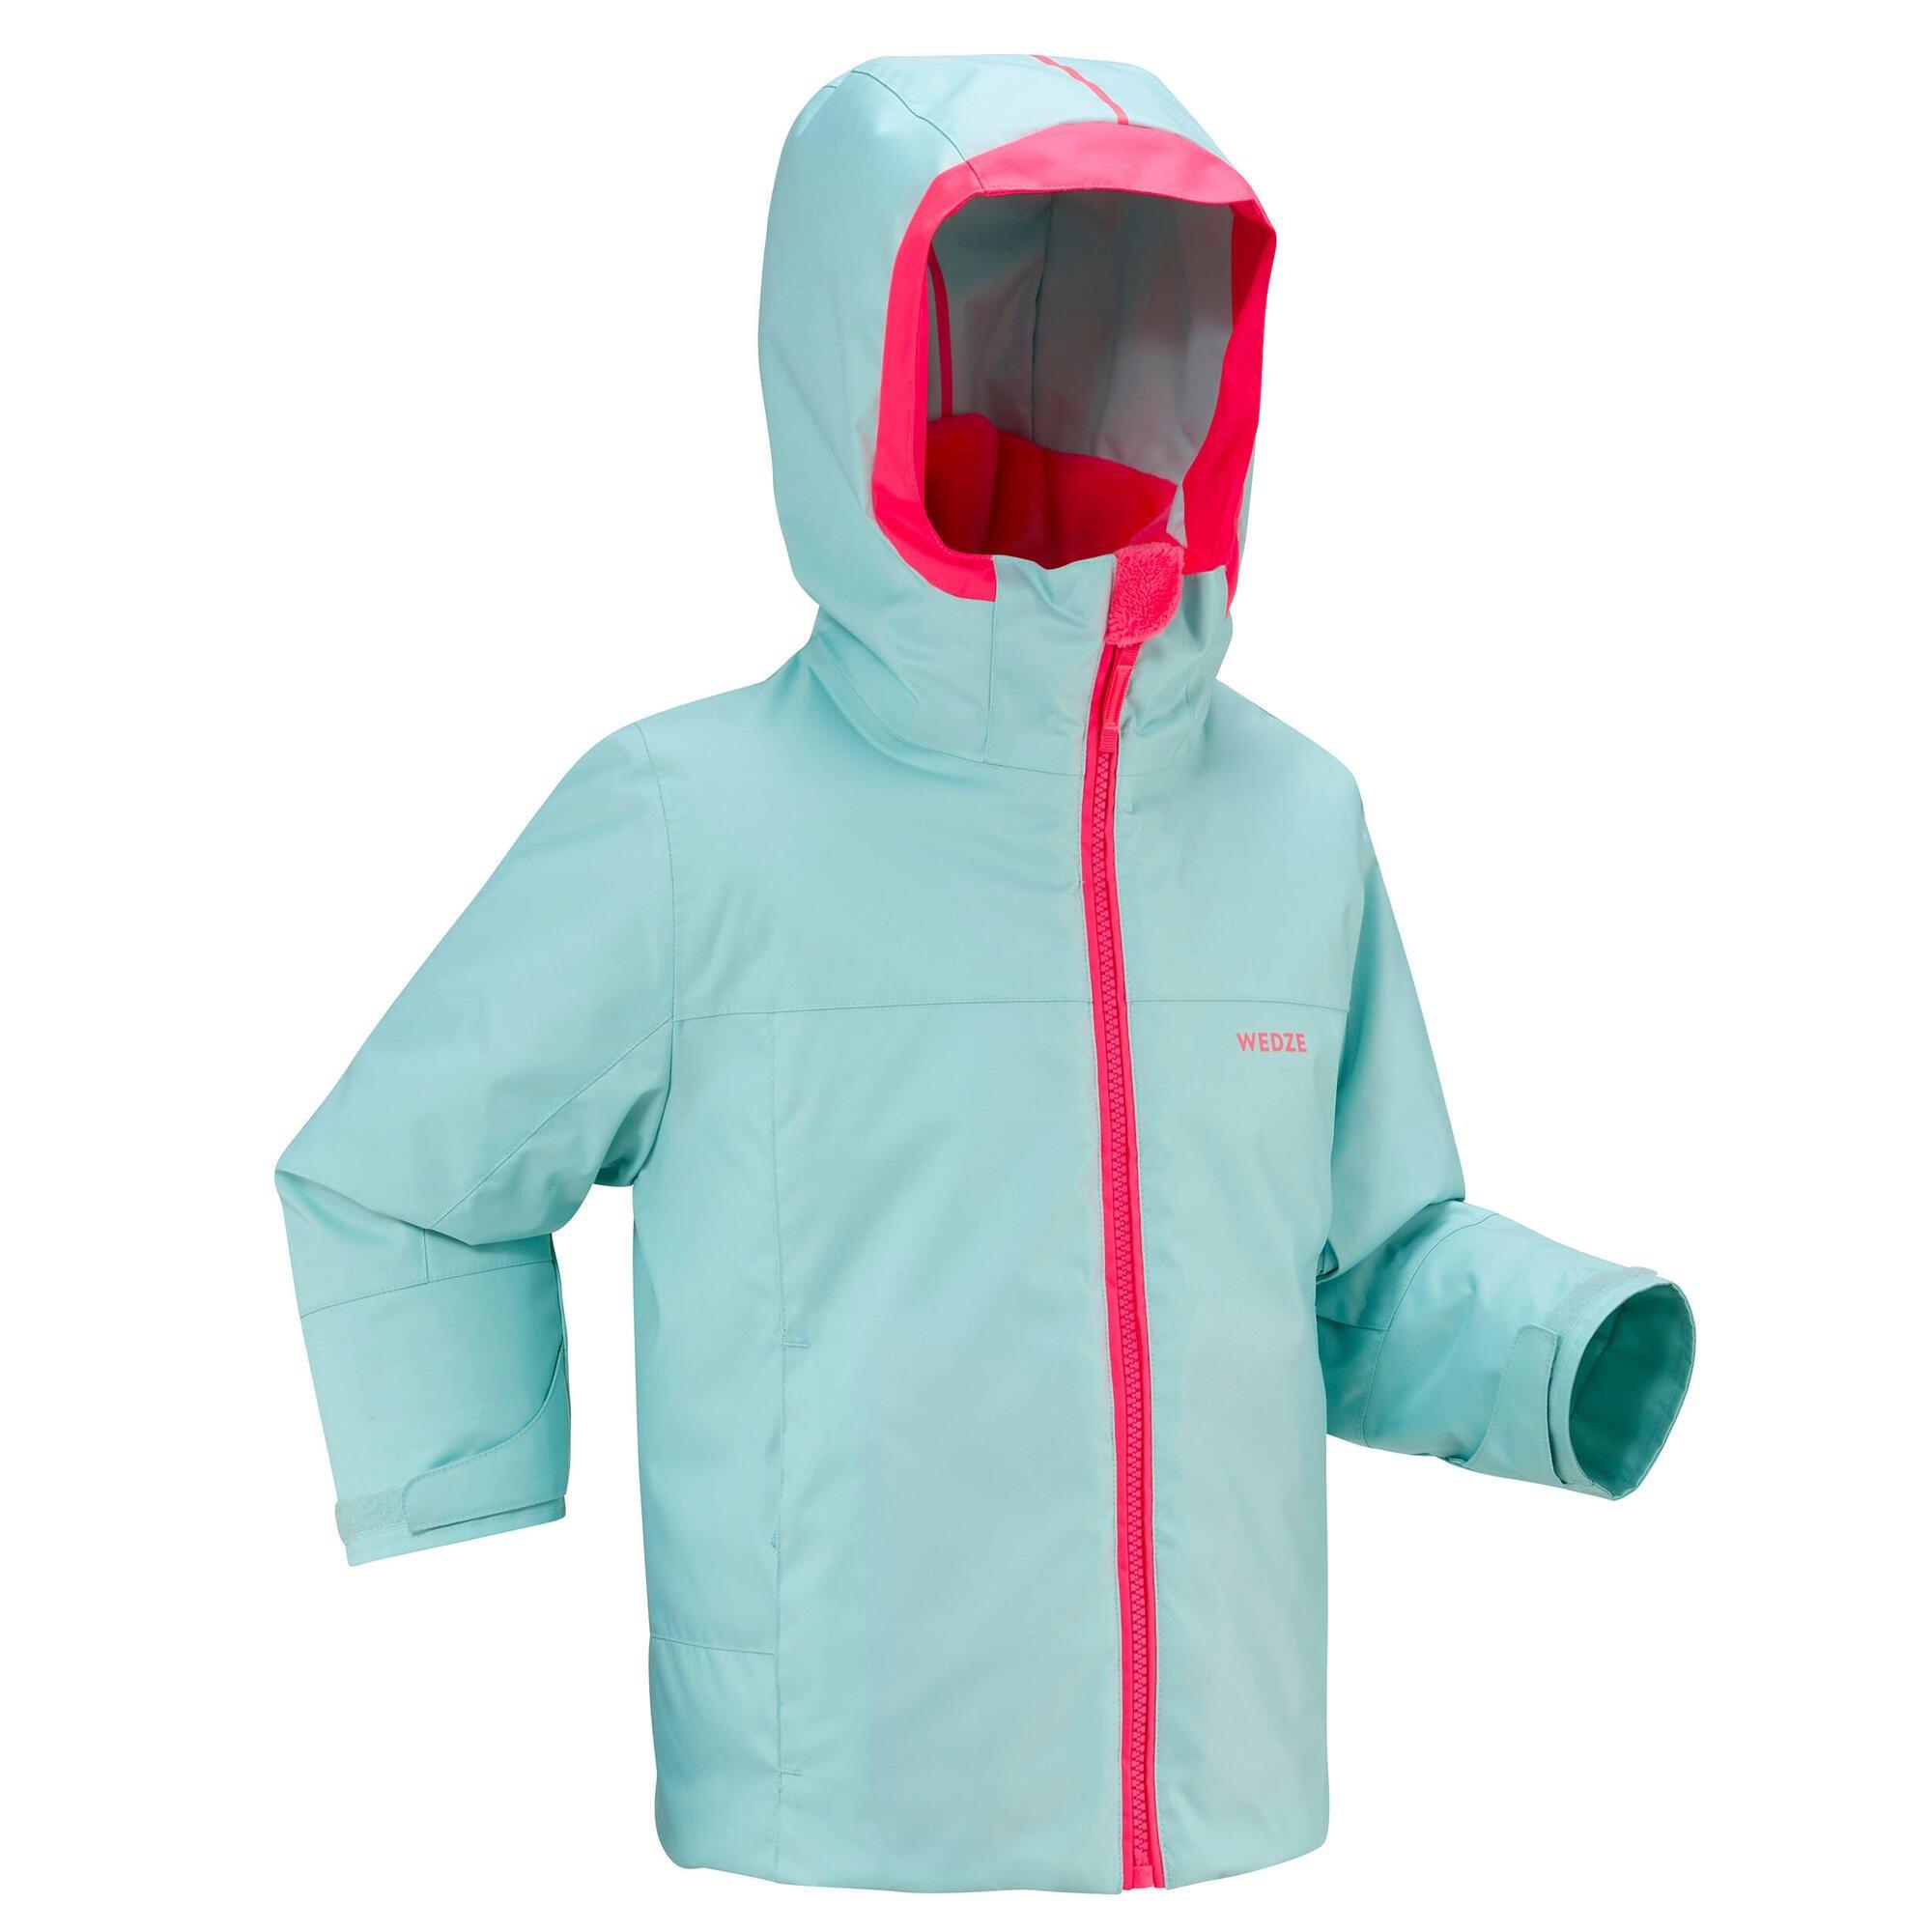 Теплая и водонепроницаемая лыжная куртка Decathlon 500 Pull'N Fit Wedze, синий